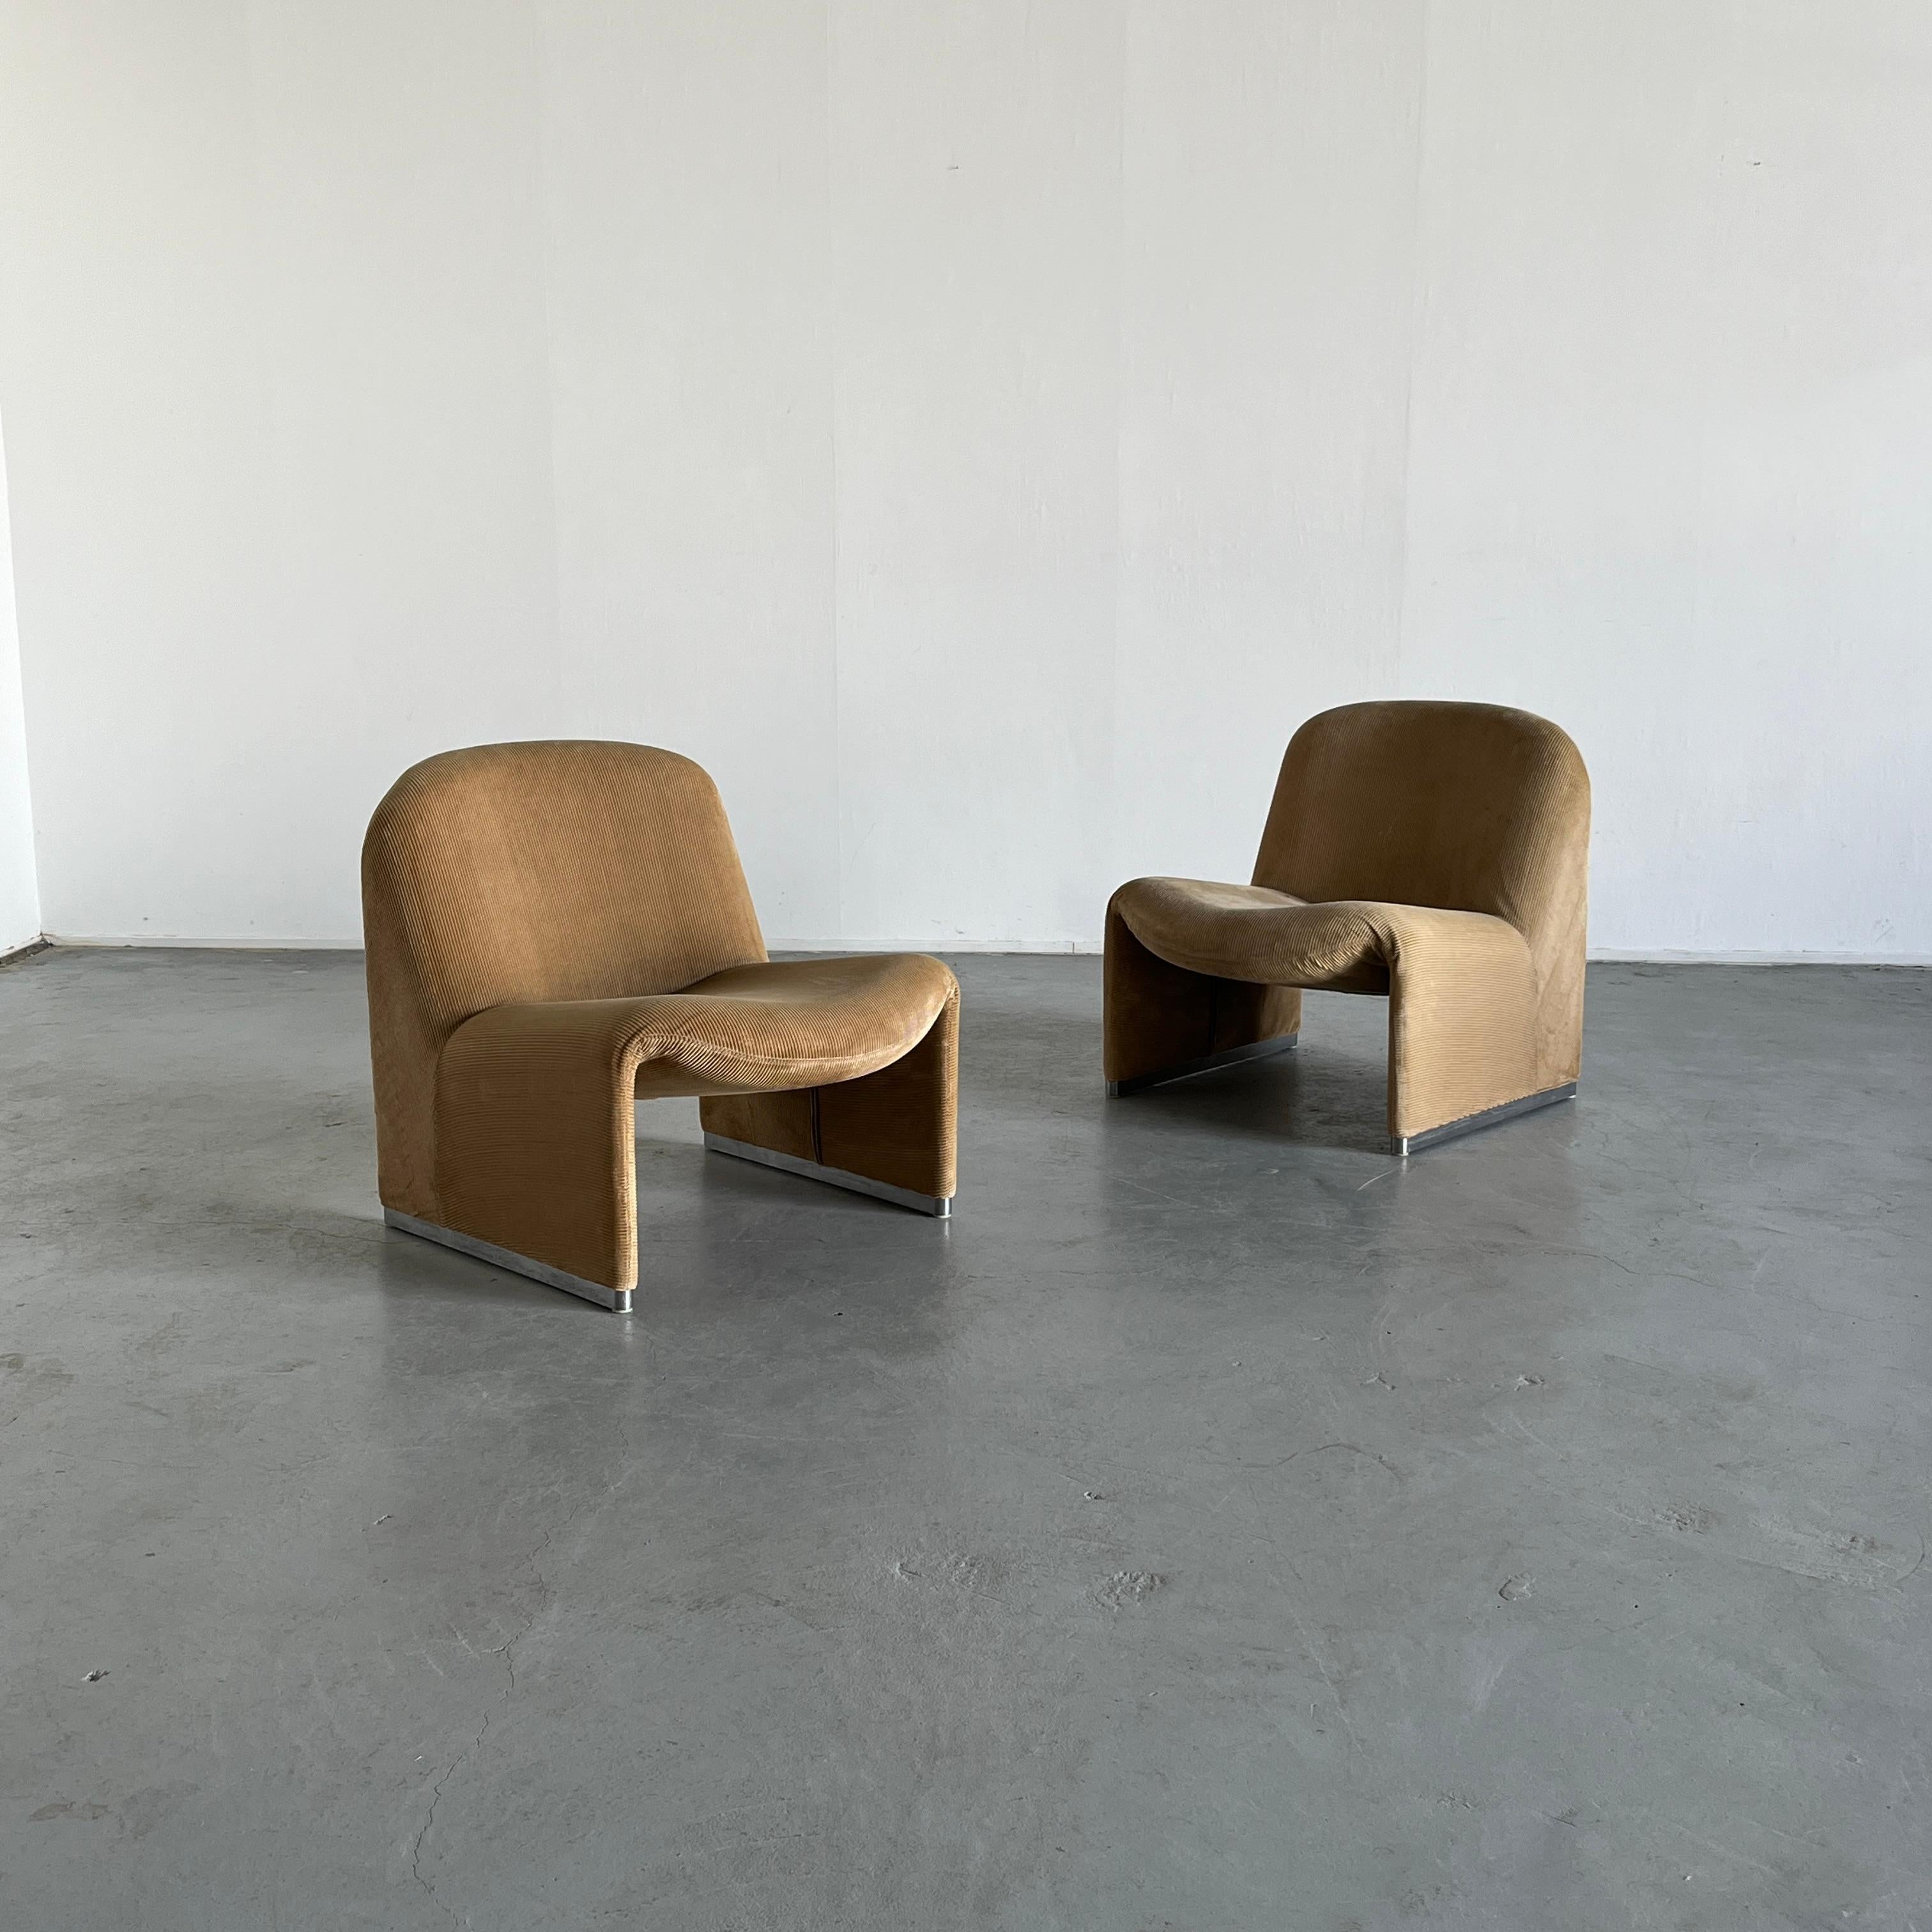 Deux chaises 'Alky' originales et iconiques, conçues par Giancarlo Piretti pour Anonima Castelli.
Une rare production du début des années 1970 en velours côtelé beige 100% coton.
Design/One iconique.

Vendu par paire (deux pièces)

Labellisé.

État